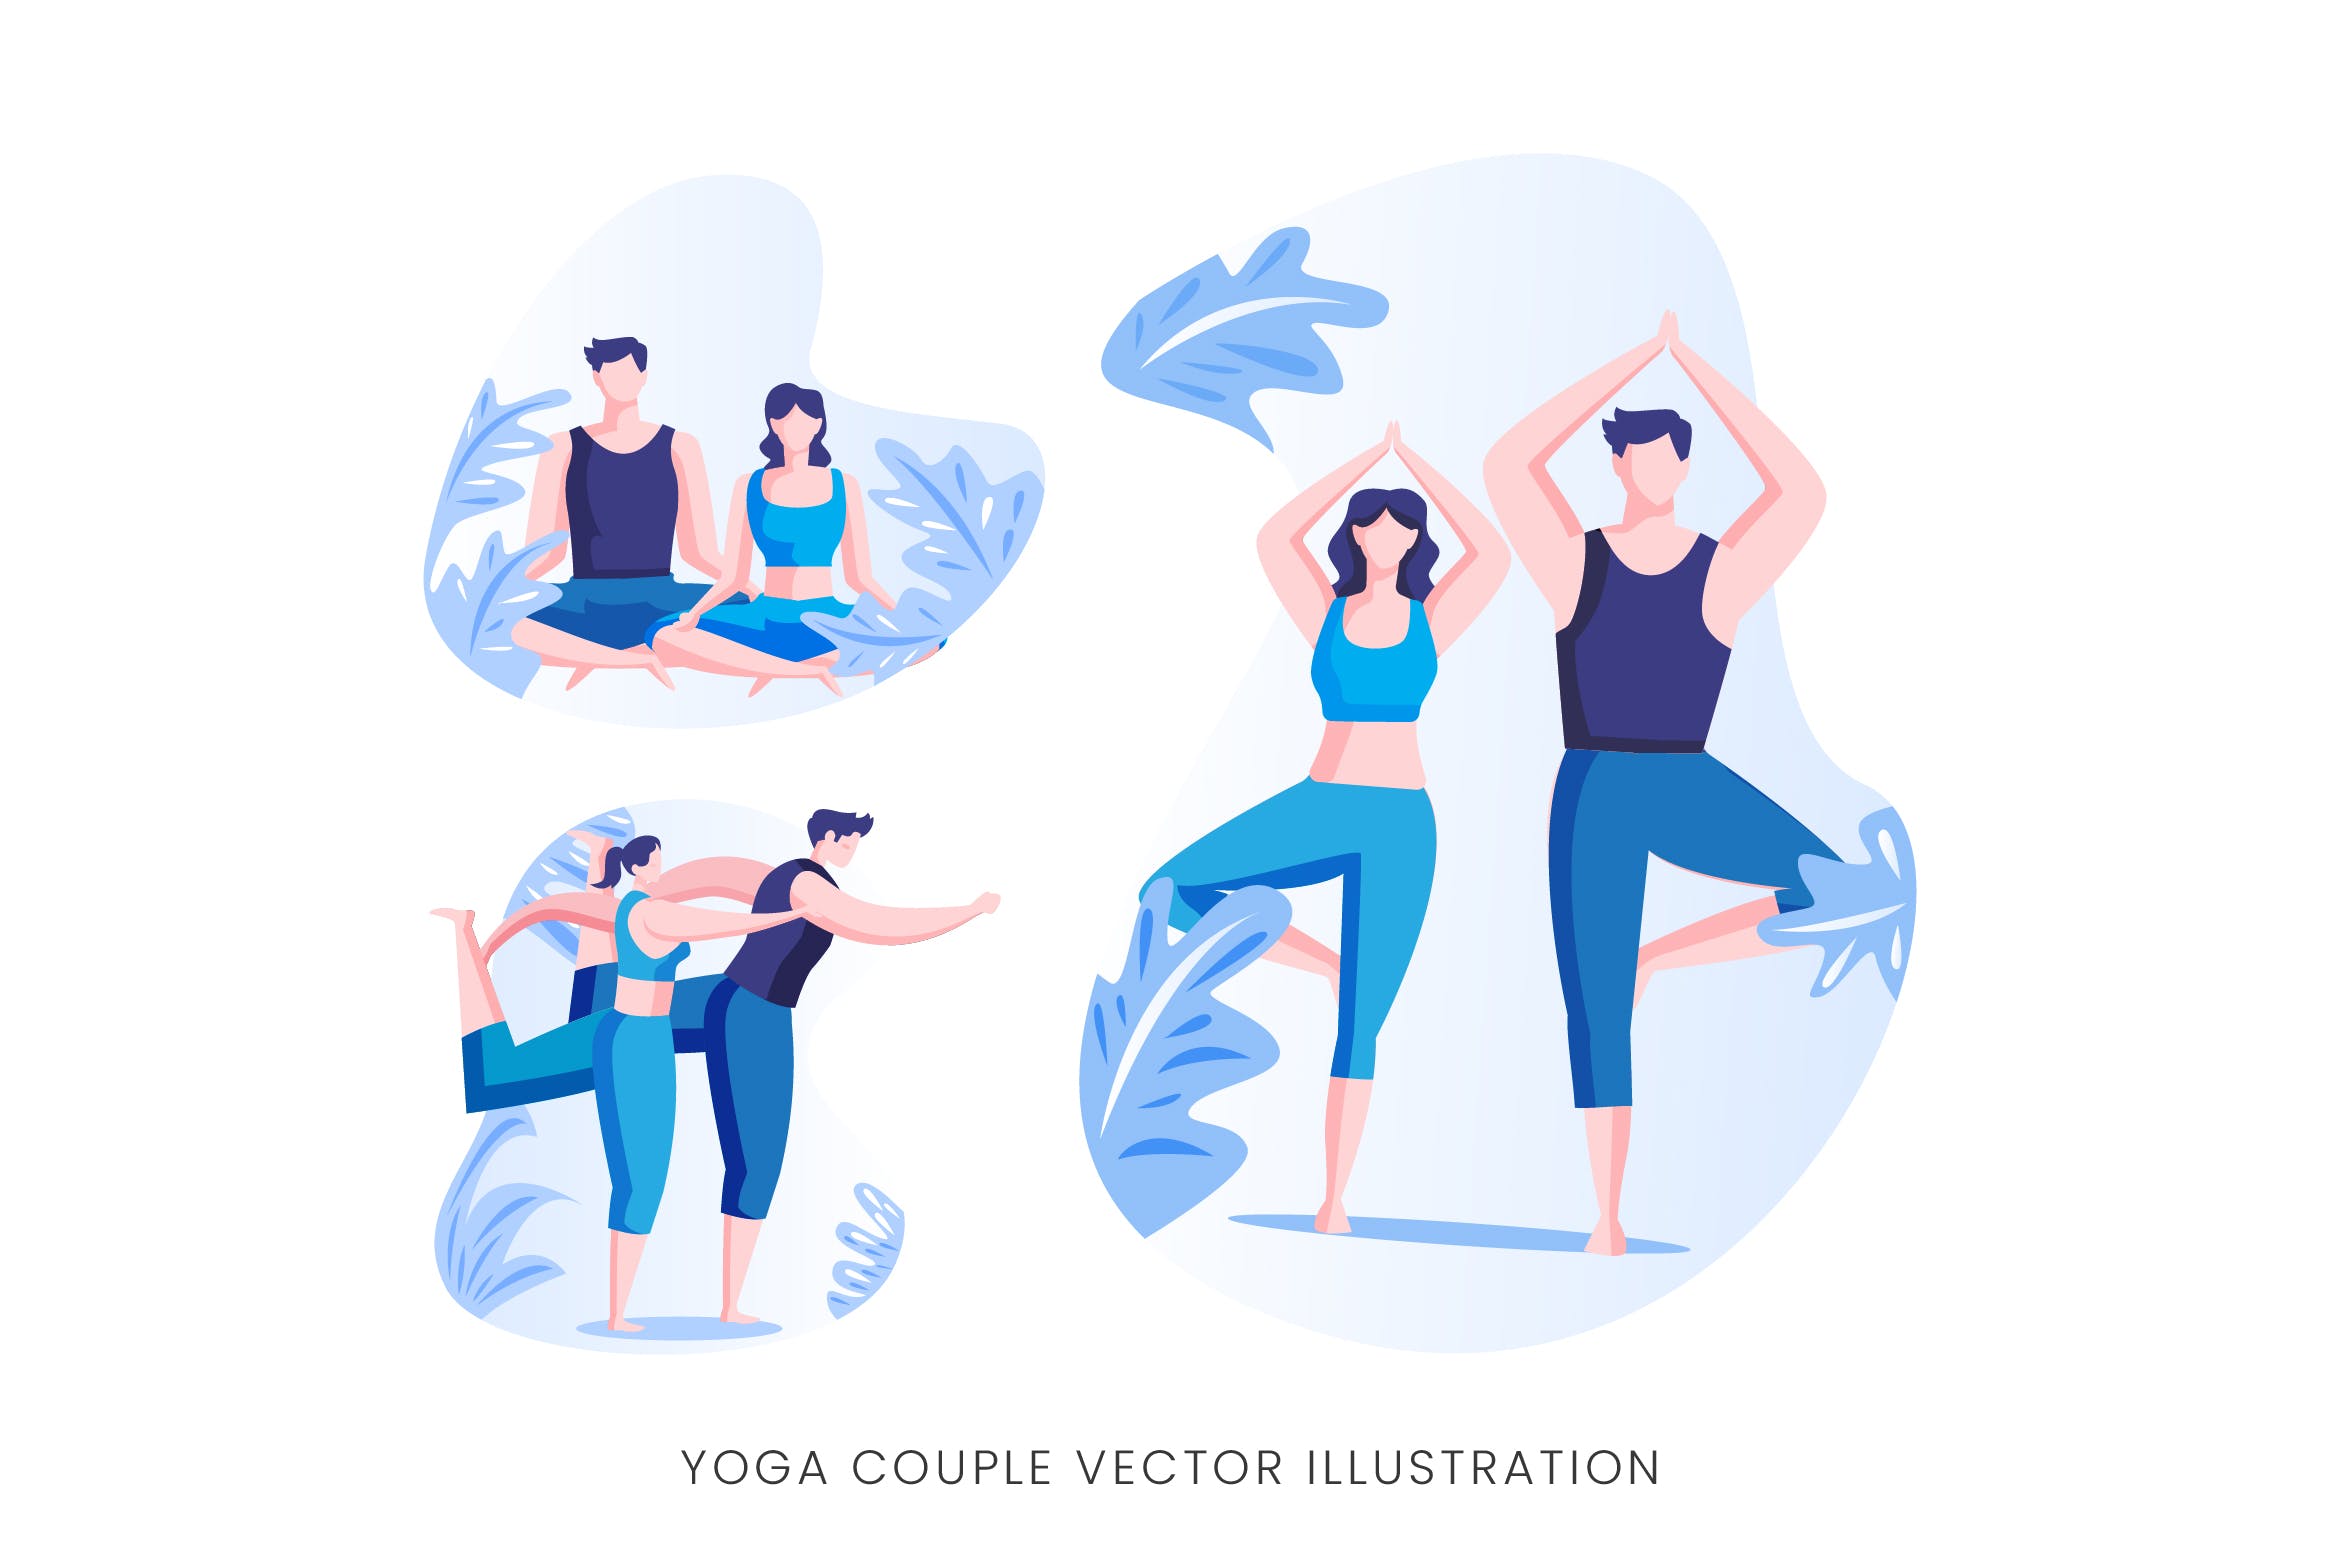 瑜珈情侣人物形象矢量手绘素材中国精选设计素材 Yoga Couple Vector Character Set插图